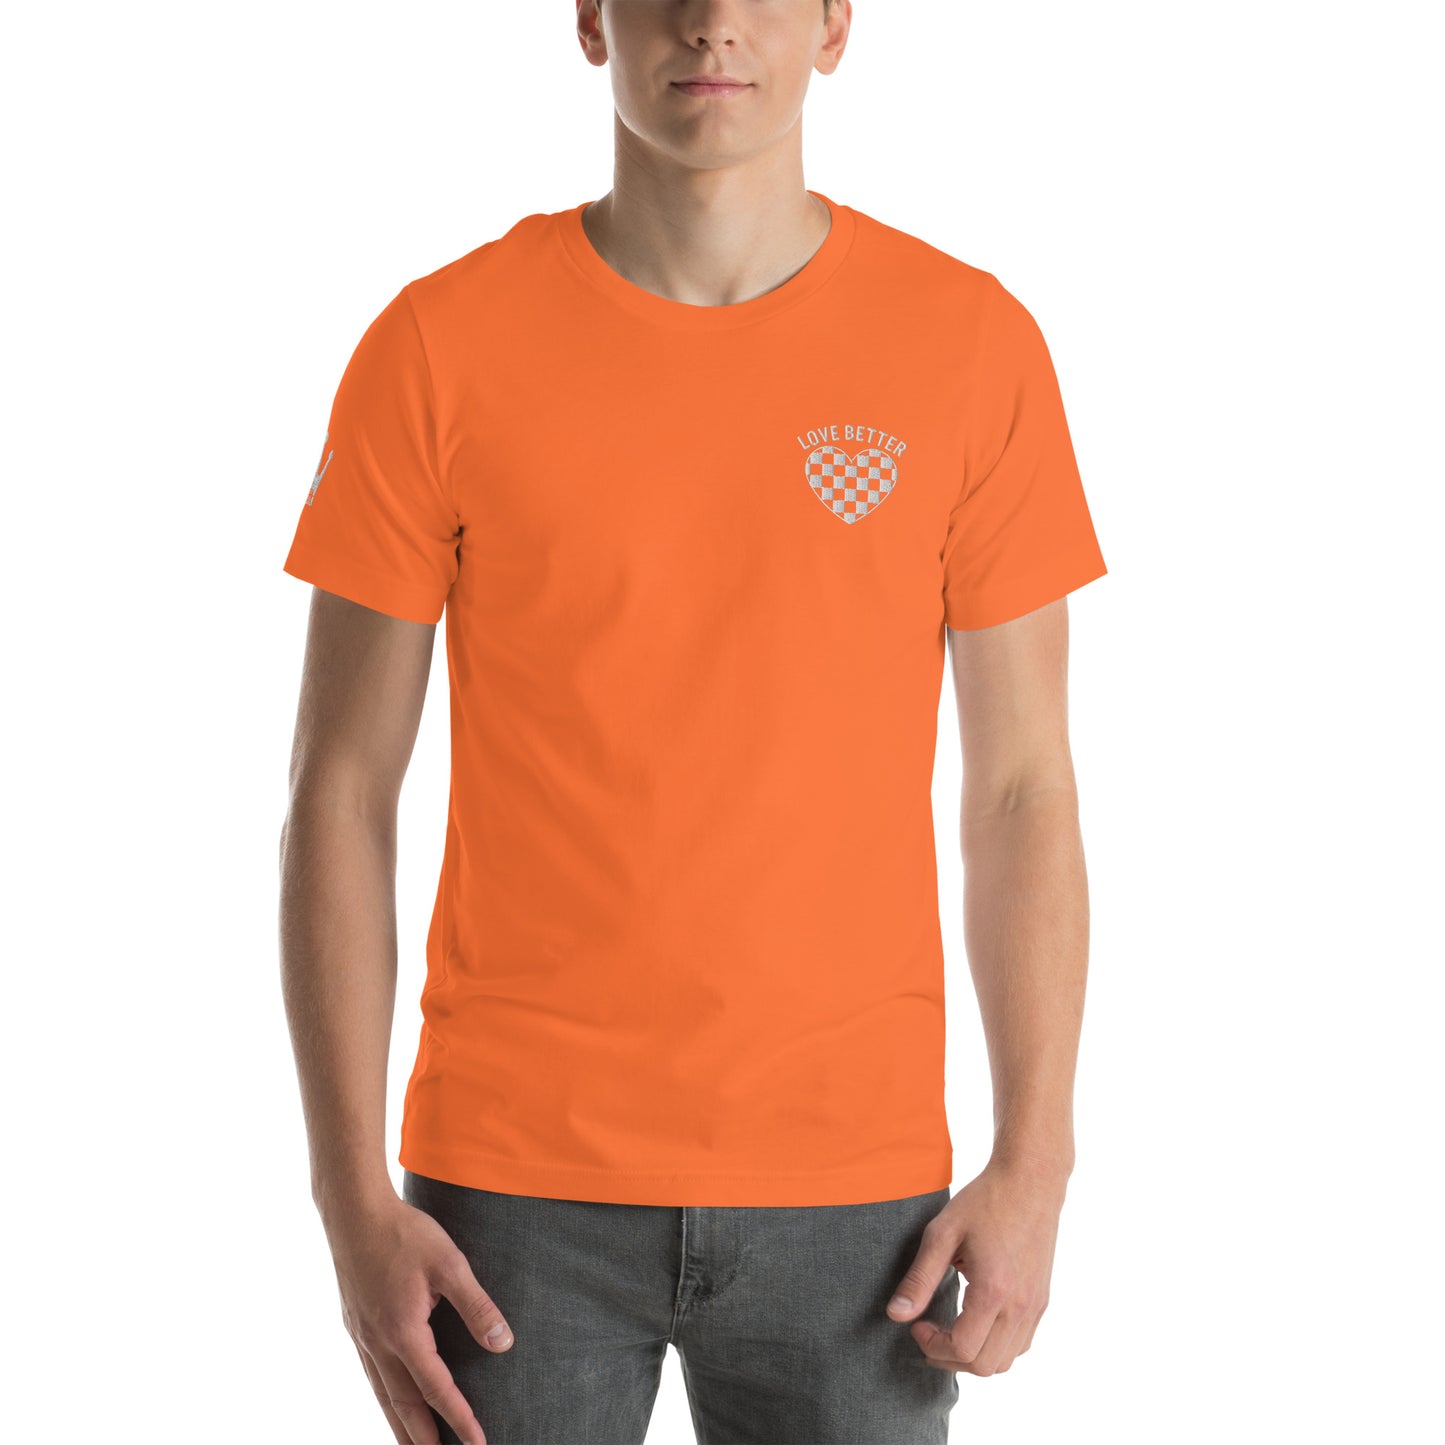 LOVE BETTER "THE STAPLE" Unisex t-shirt